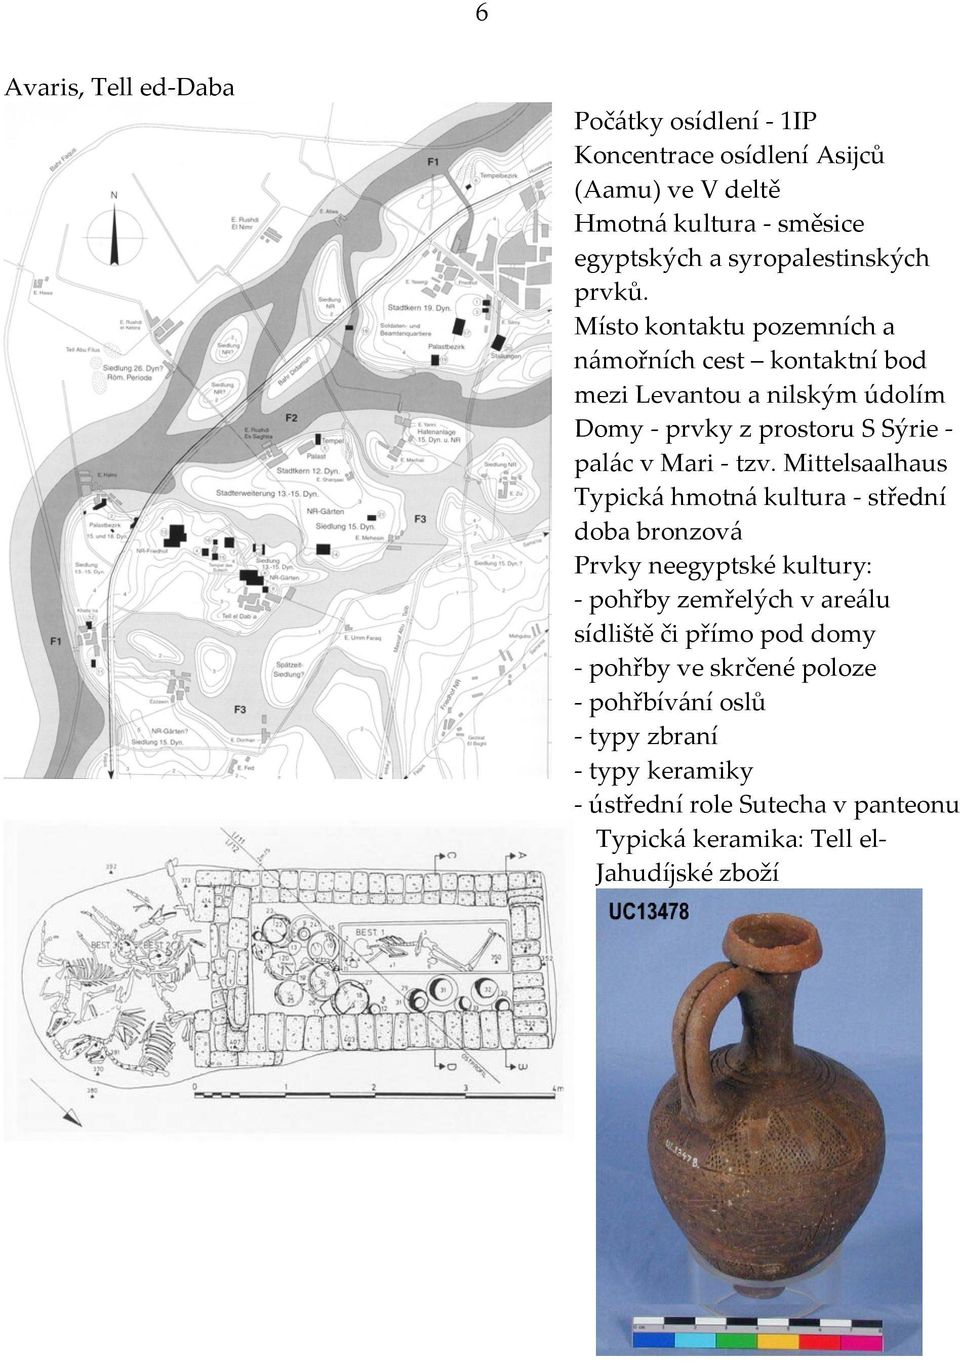 Mittelsaalhaus Typická hmotná kultura - střední doba bronzová Prvky neegyptské kultury: - pohřby zemřelých v areálu sídliště či přímo pod domy -